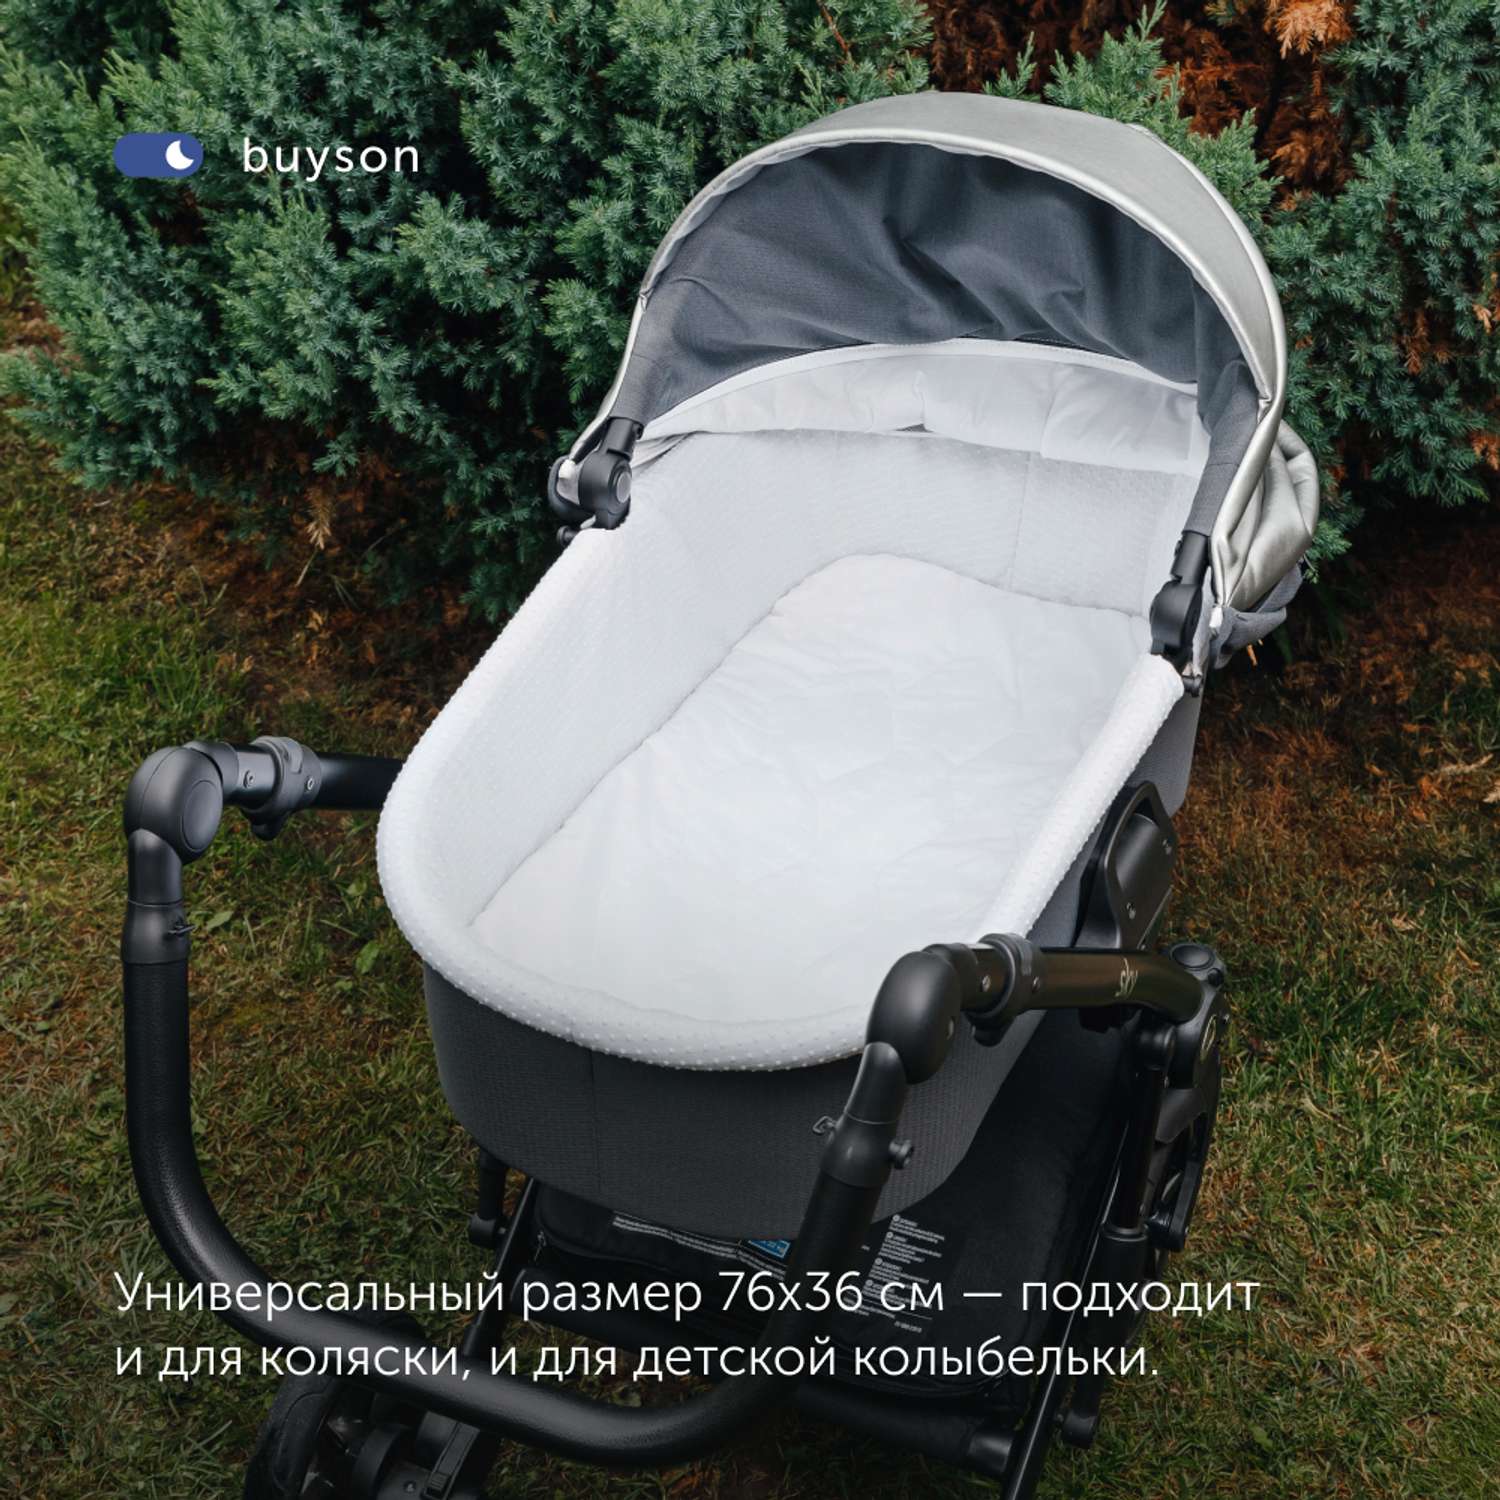 Матрас в коляску buyson BuyCloud для новорожденных 76x36 см MT076*0360003292265 - фото 10